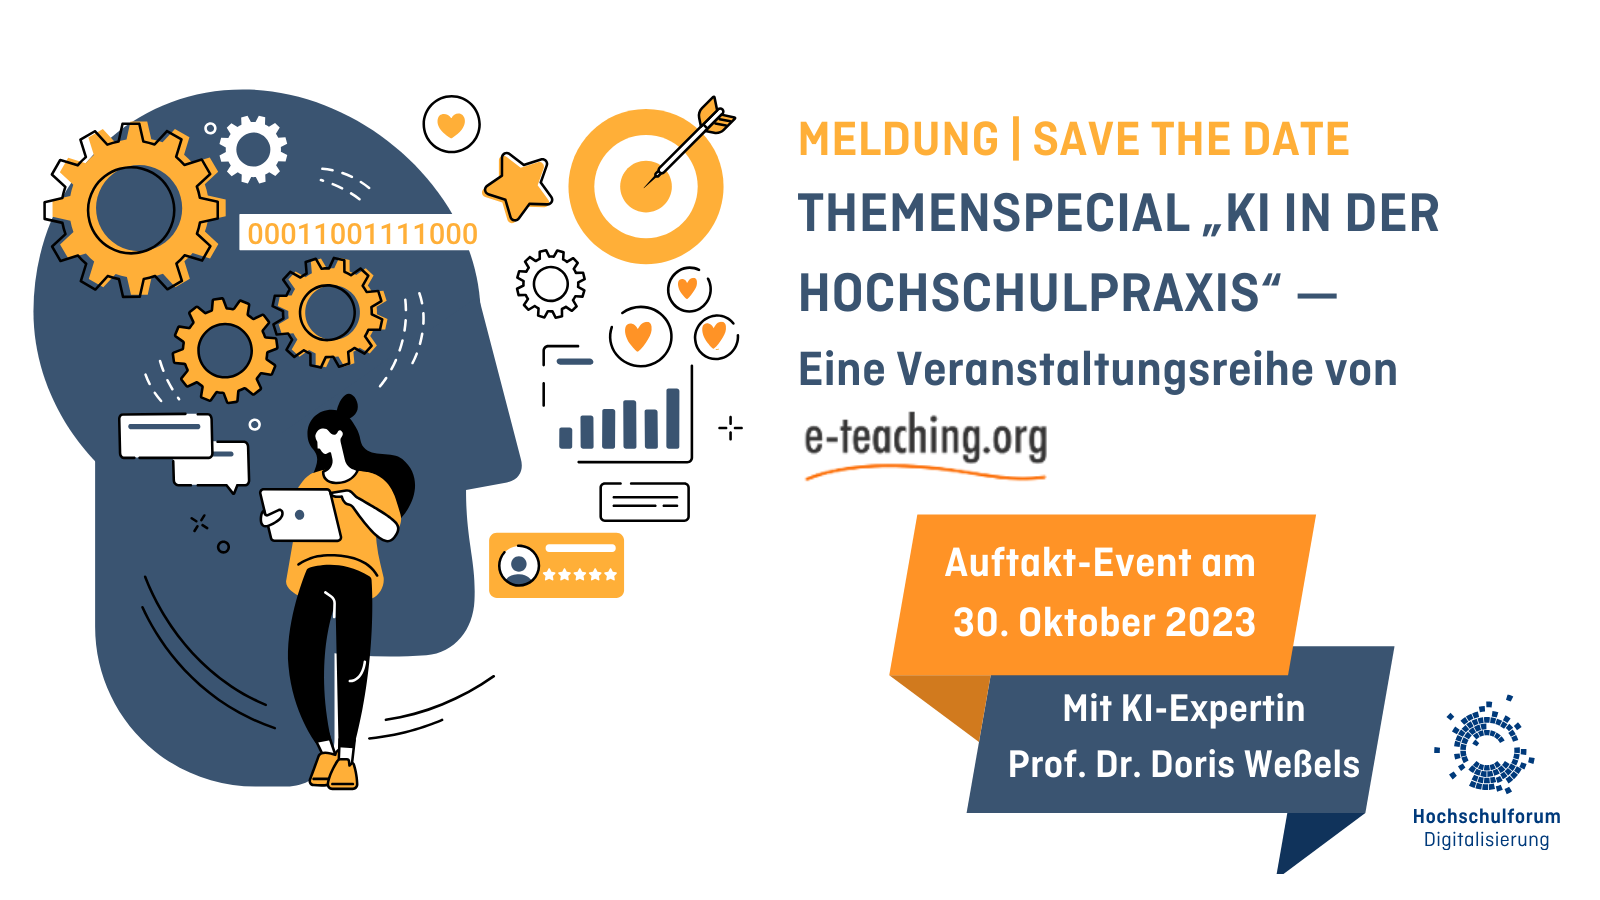 Text: MELDUNG | SAVE THE DATE THEMENSPECIAL „KI IN DER HOCHSCHULPRAXIS“ —  Eine Veranstaltungsreihe von e-teaching.org, Auftakt-Event am  30. Oktober 2023, Mit KI-Expertin Prof. Dr. Doris Weßels